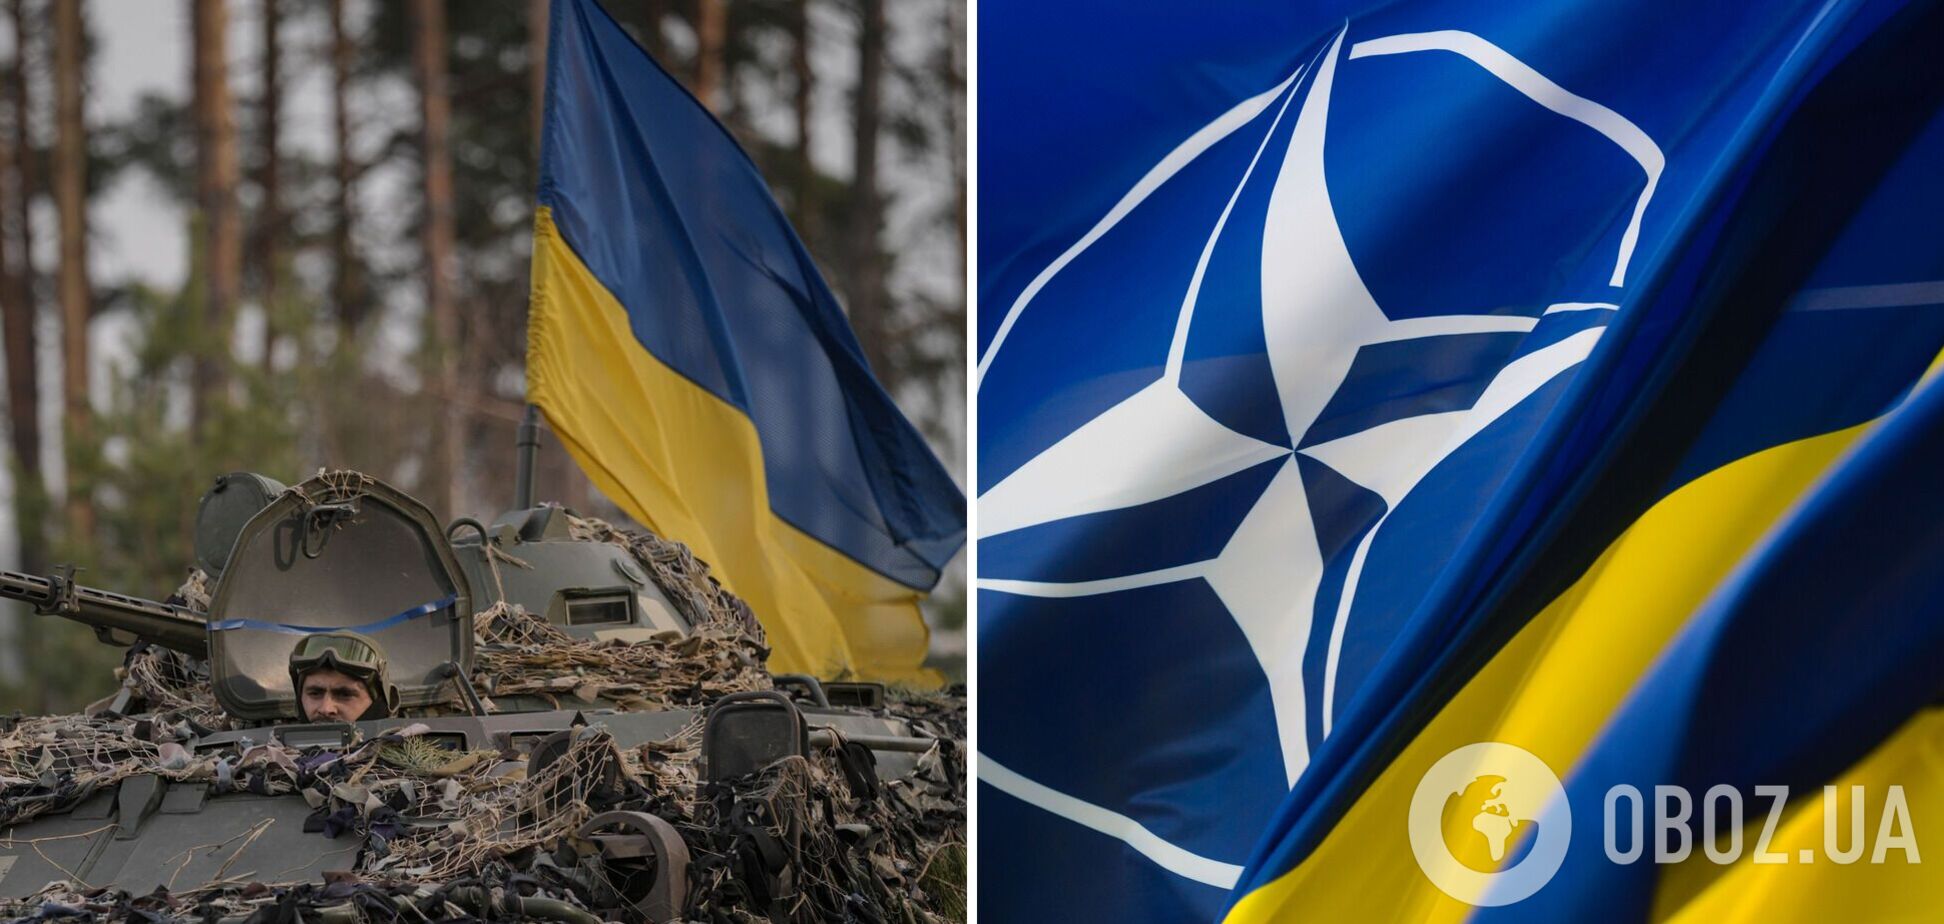 Майже дві третини громадян країн-членів НАТО негативно ставляться до Росії: опитування напередодні вільнюського саміту